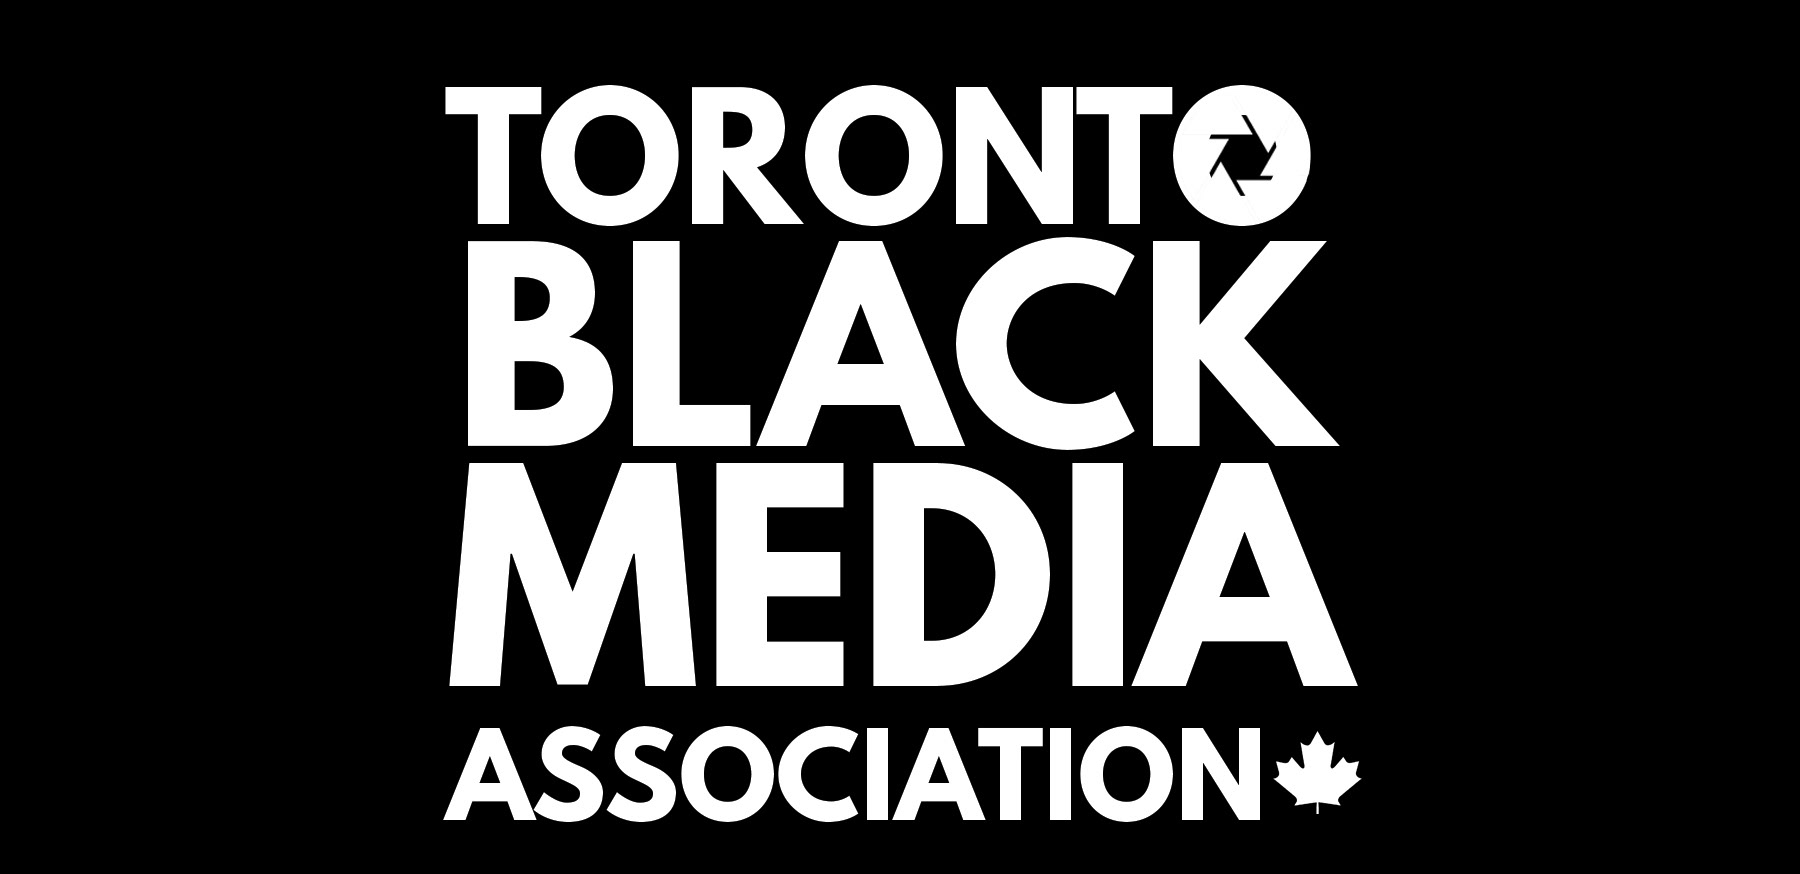 Toronto Black Media Association